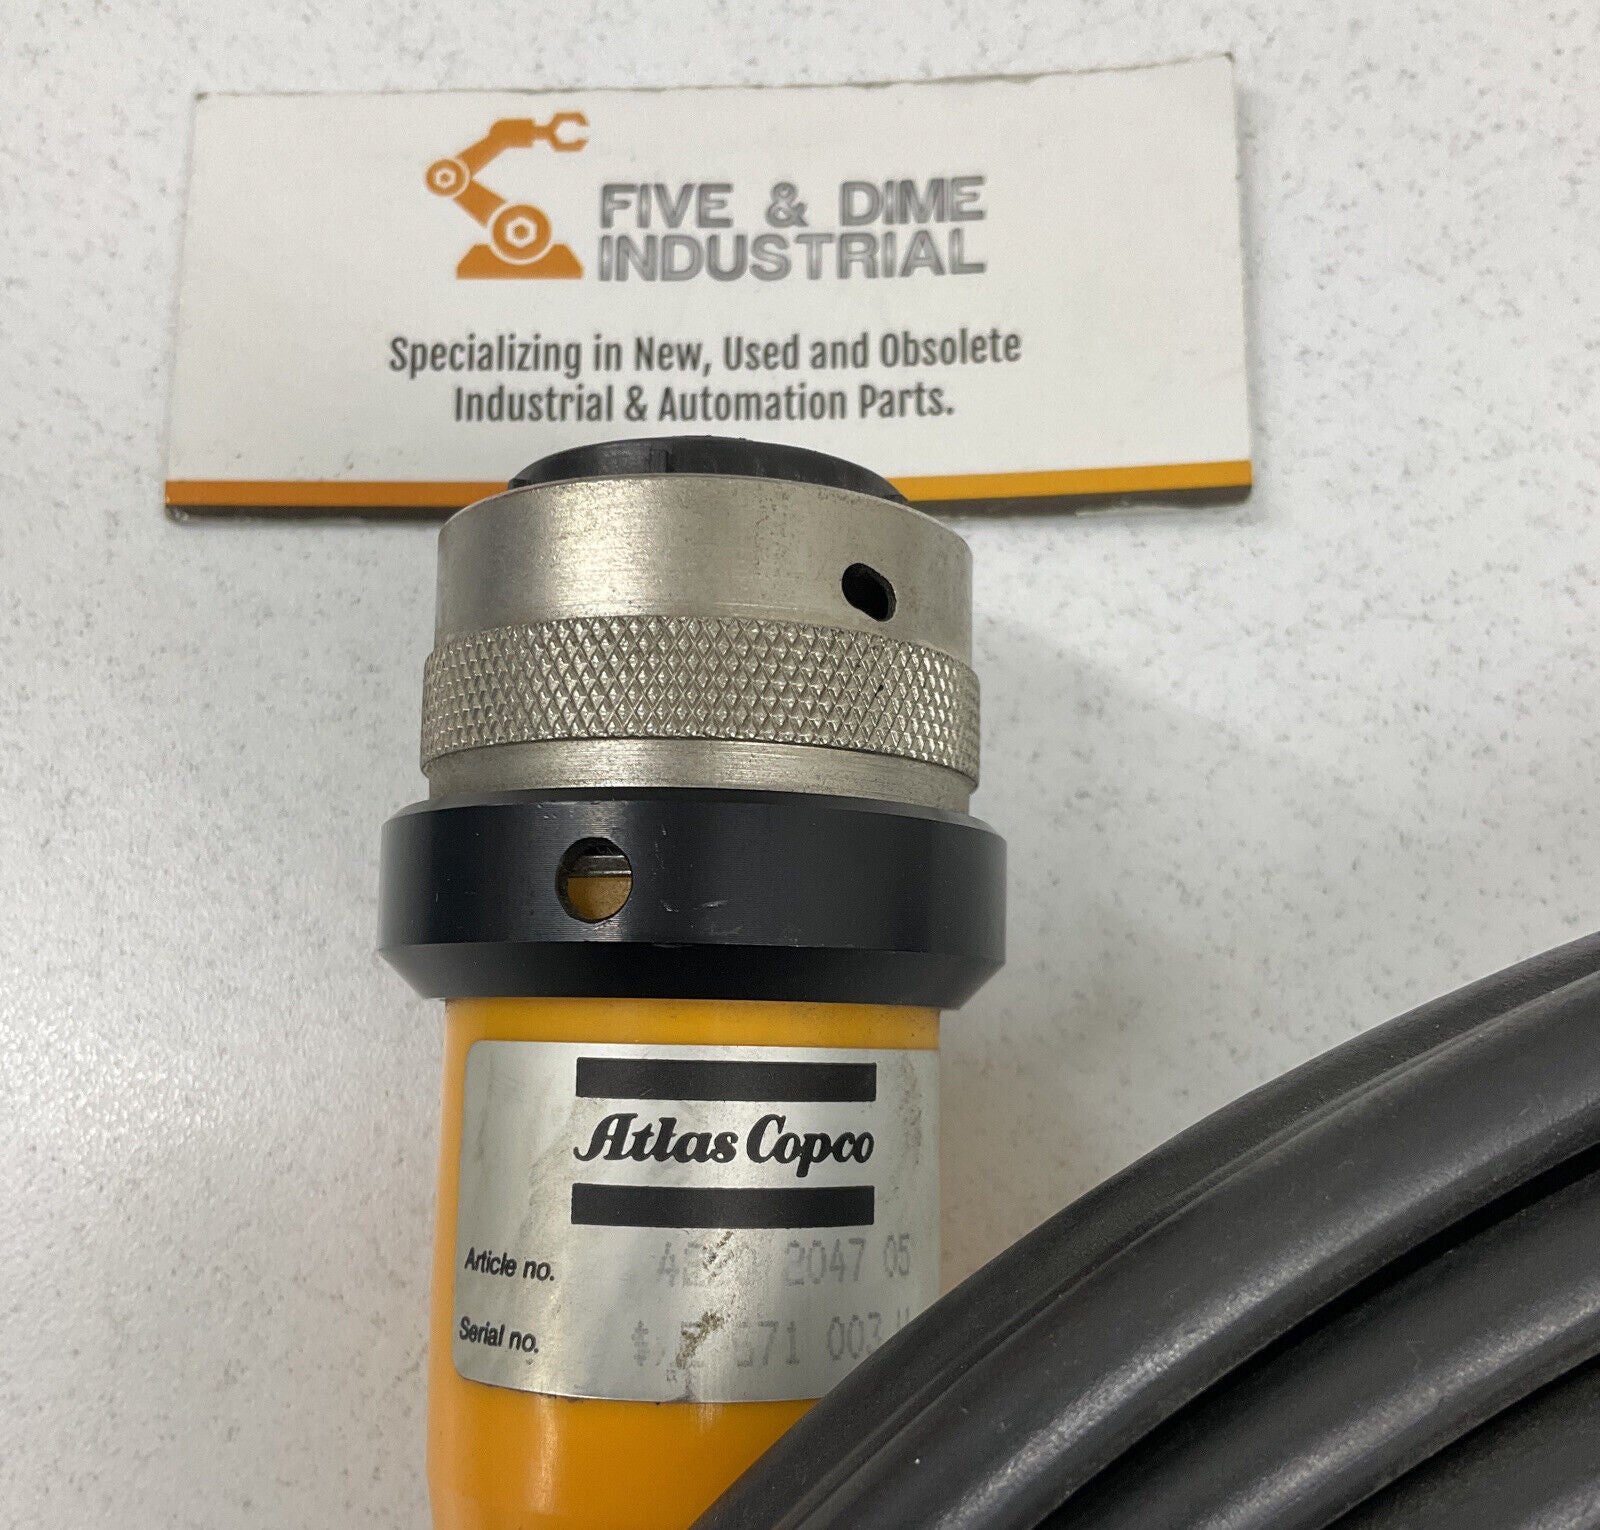 Atlas Copco 4220 2047 05 Tensor Cable  5 Meters (CBL125)